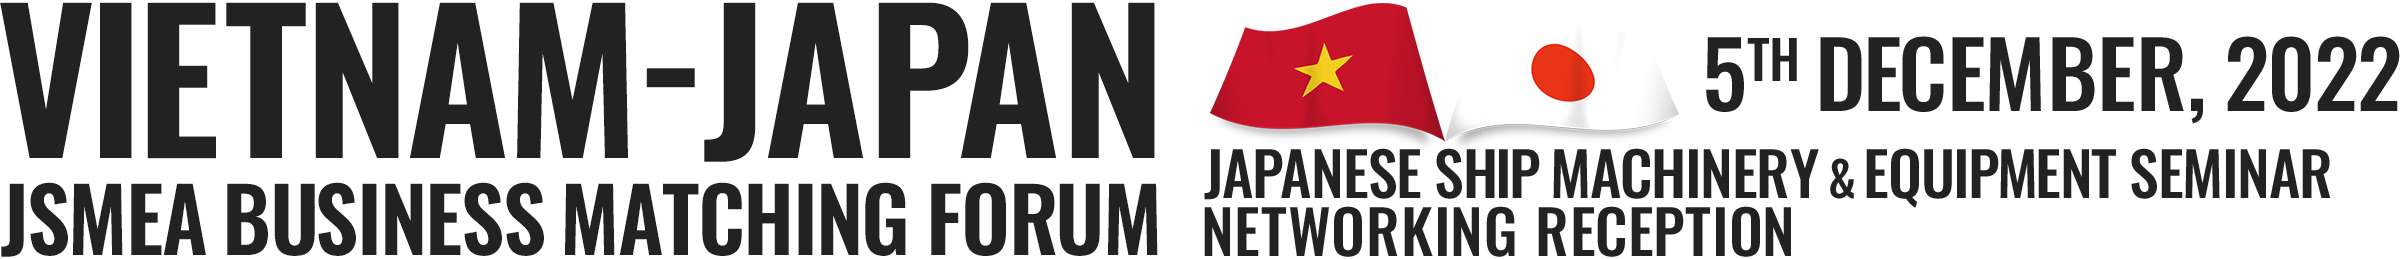 VIETNAM-JAPAN JSMeA BUSINESS MATCHING FORUM 5th December, 2022